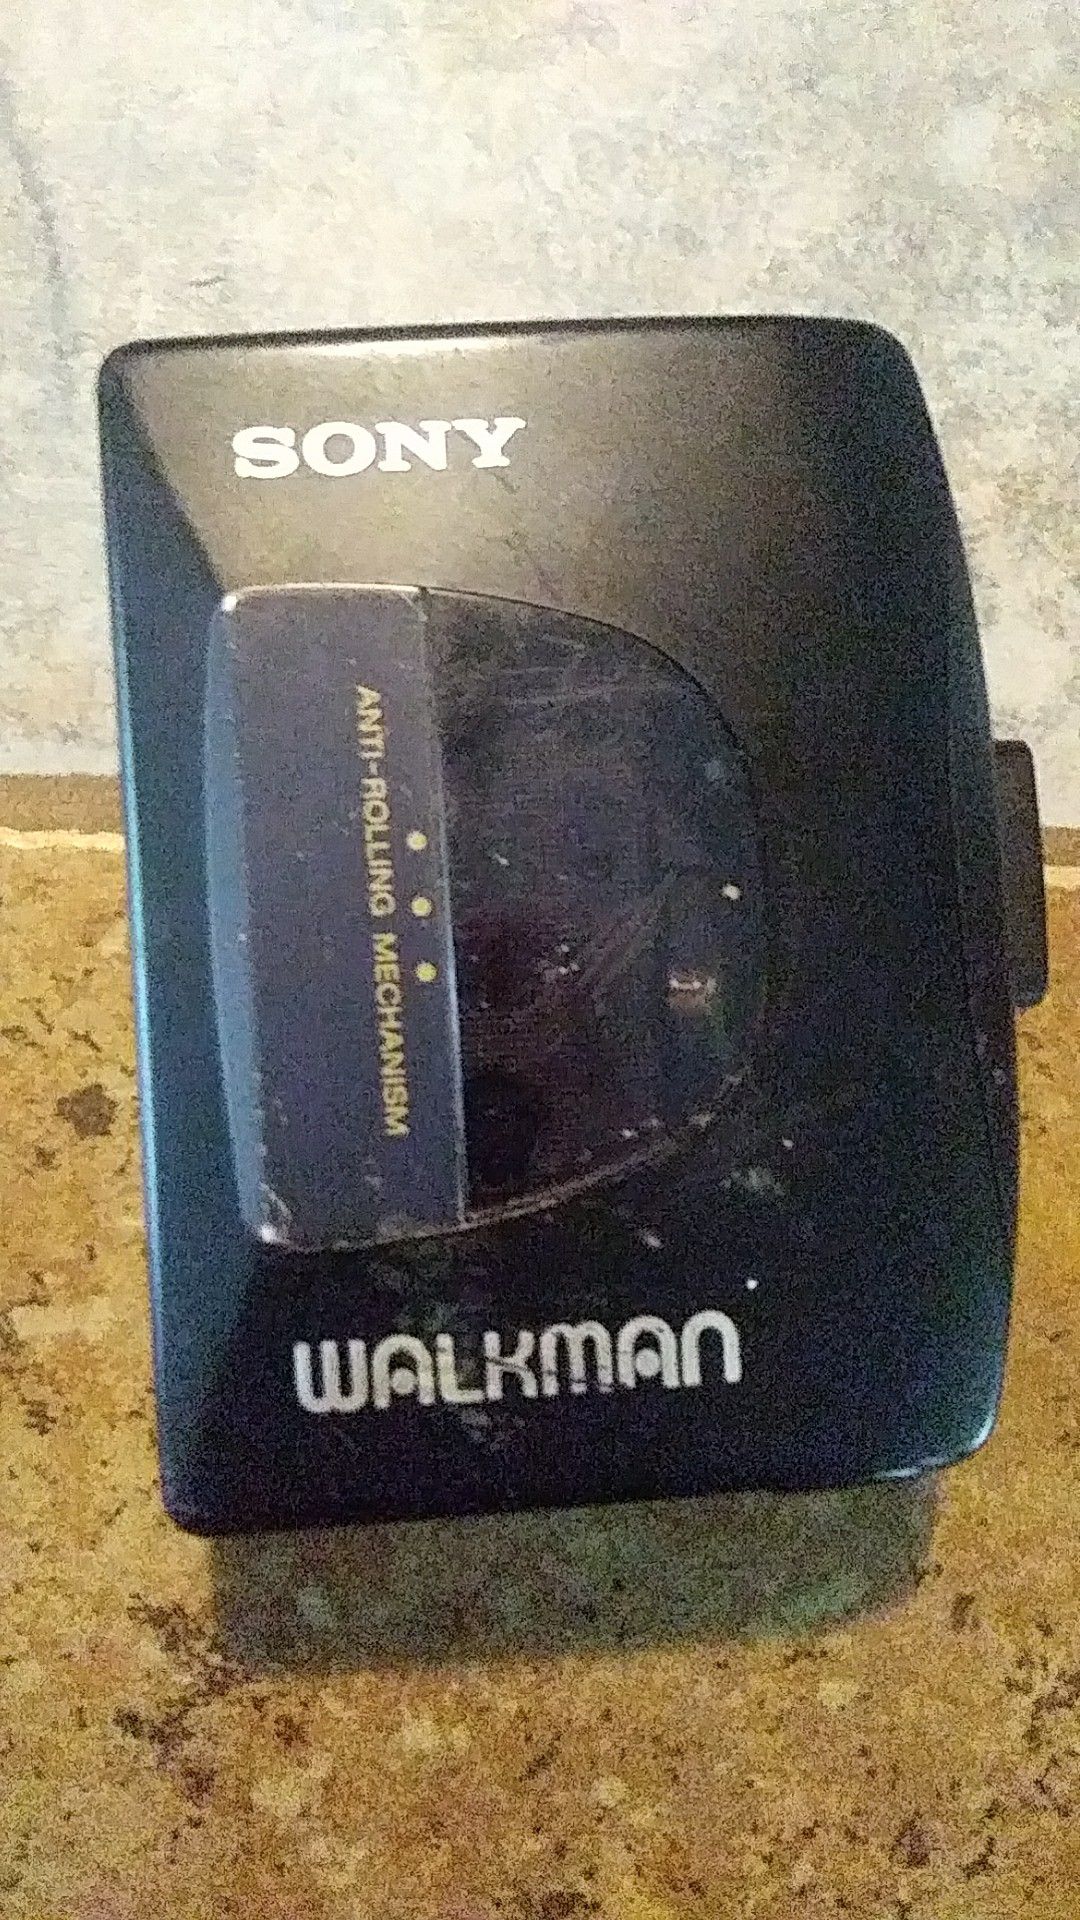 Sony Walkman video cassette player